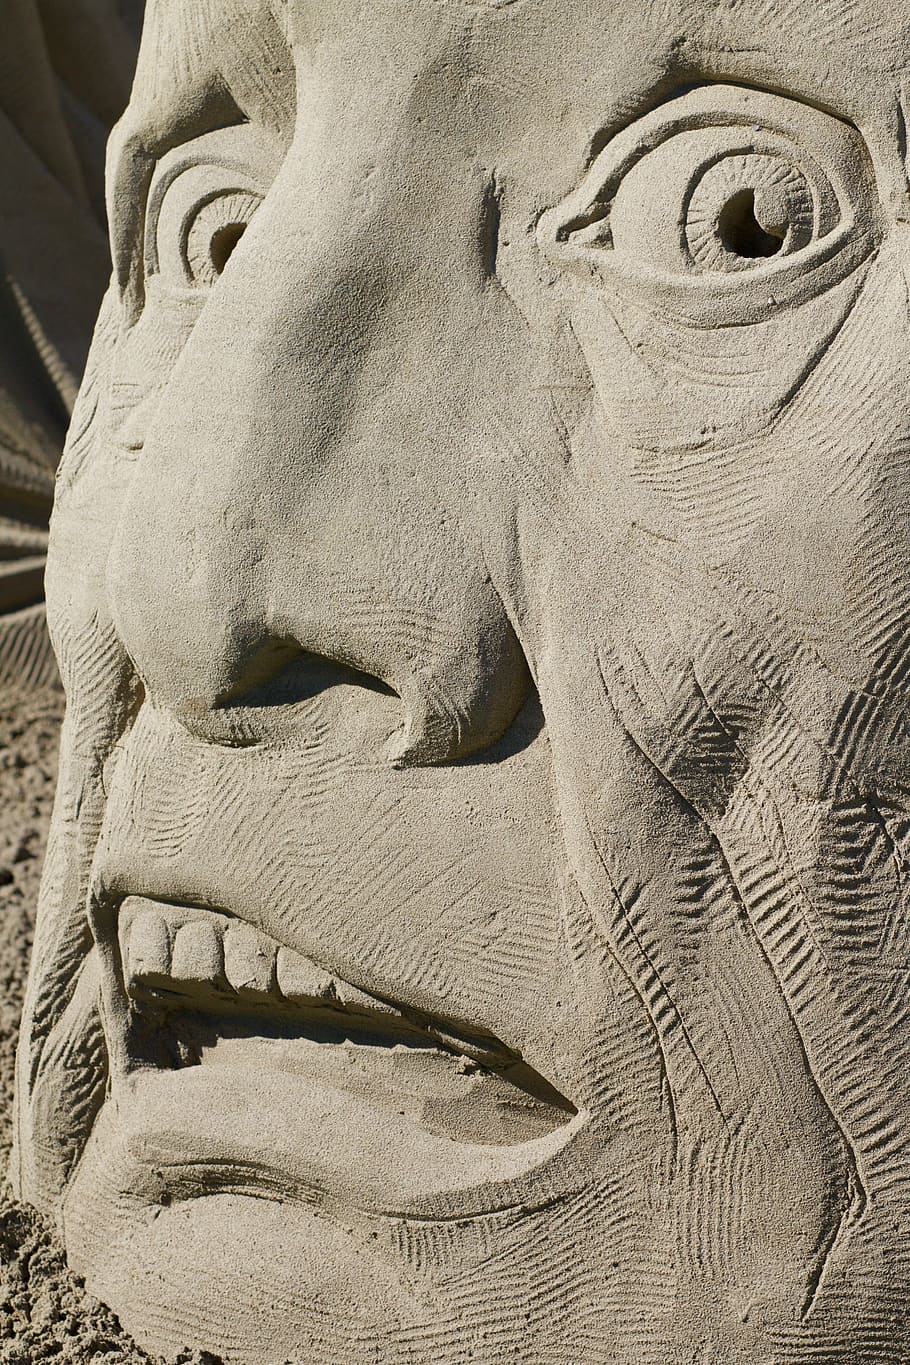 cinza, concreto, estátua do rosto, olho, nariz, boca, medo, escultura em areia, close-up, artesanato